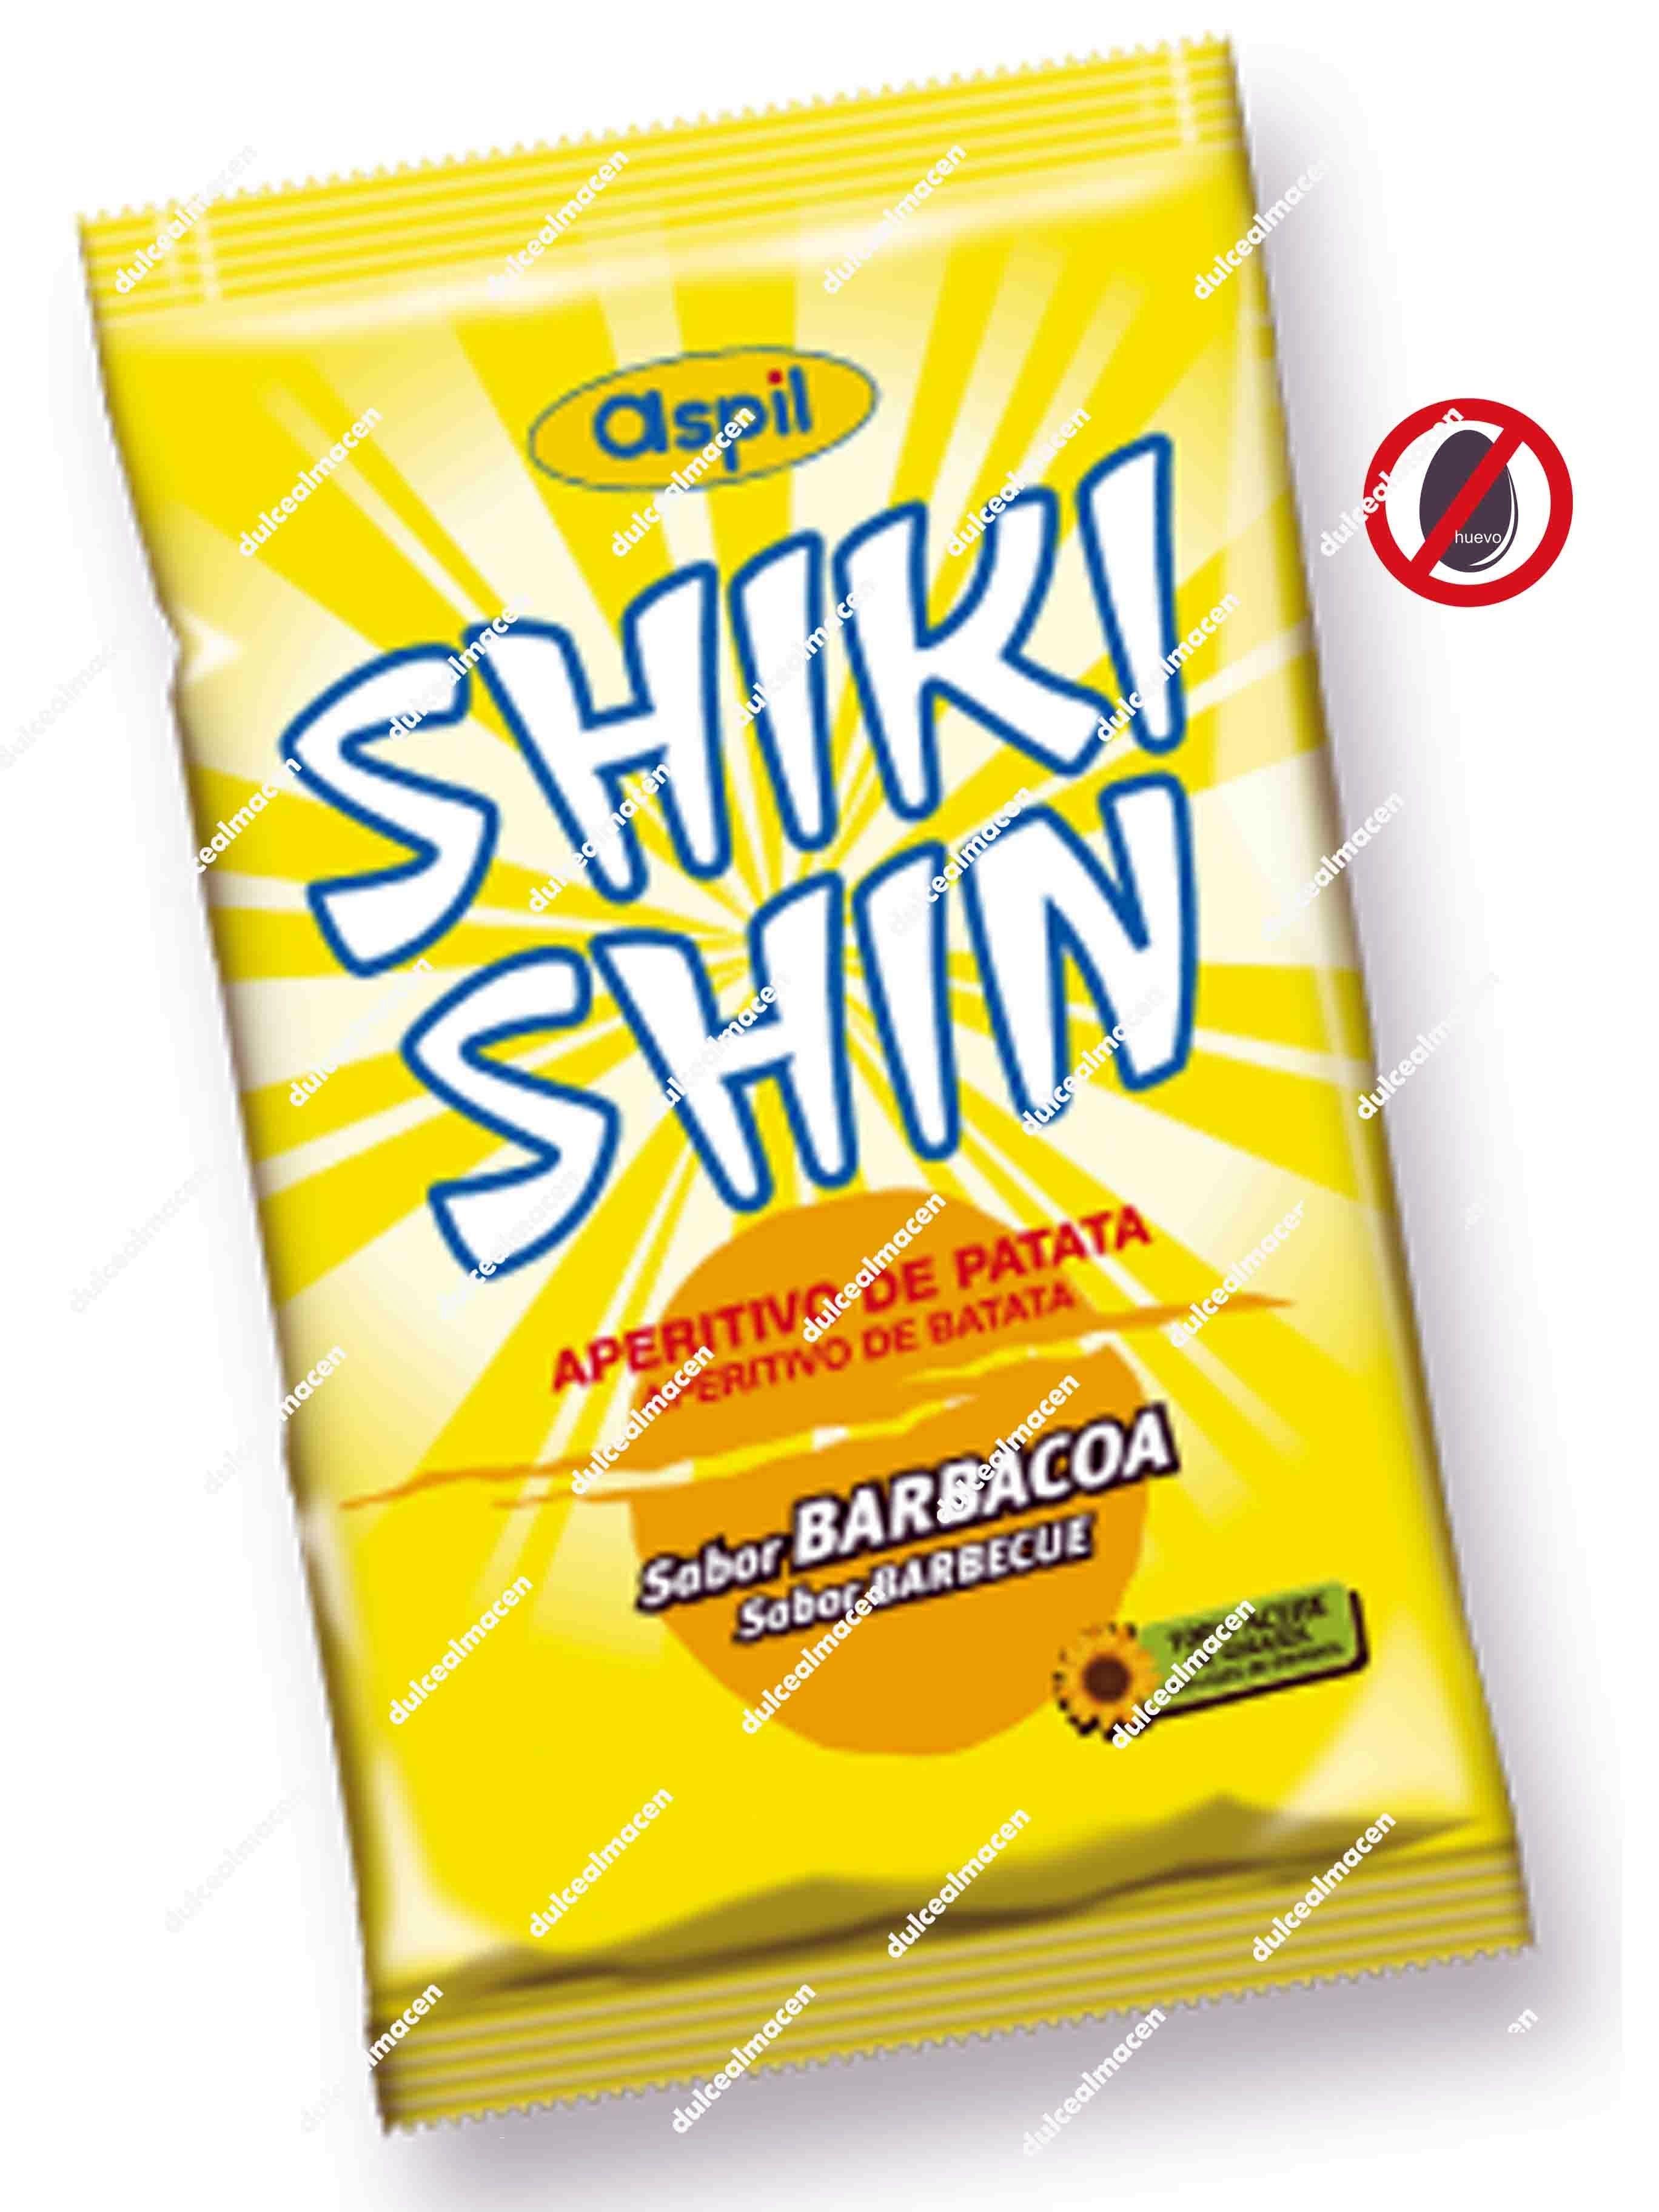 Aspil S/R shiki shin (C-12)